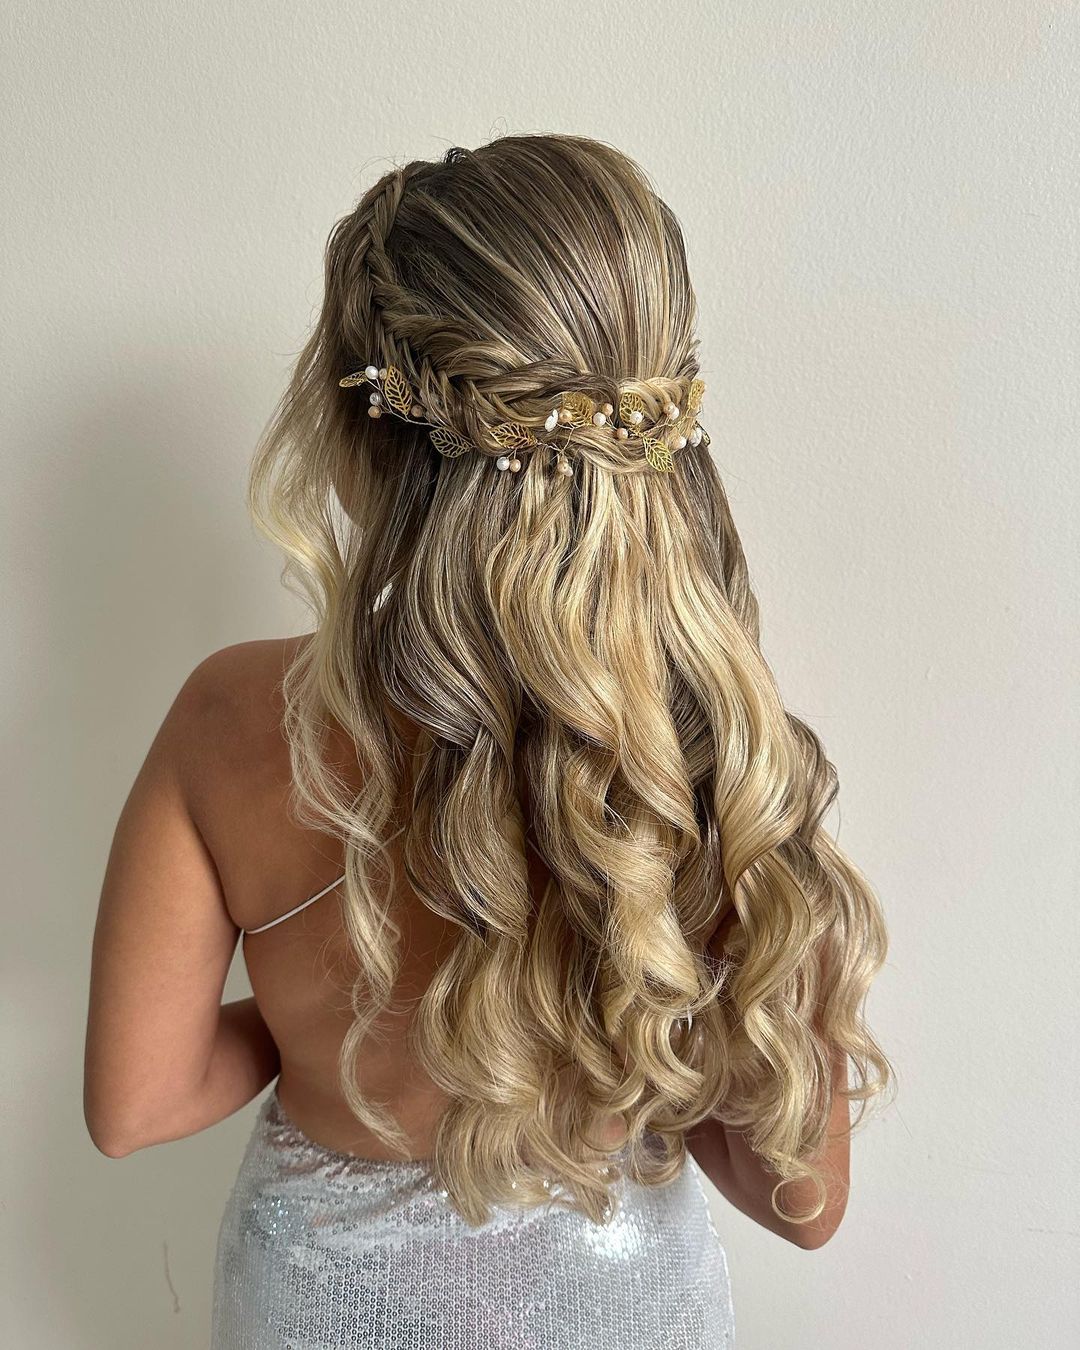 braided crown half up half down bridesmaid hairstyle via penteadosfernandaguimaraes